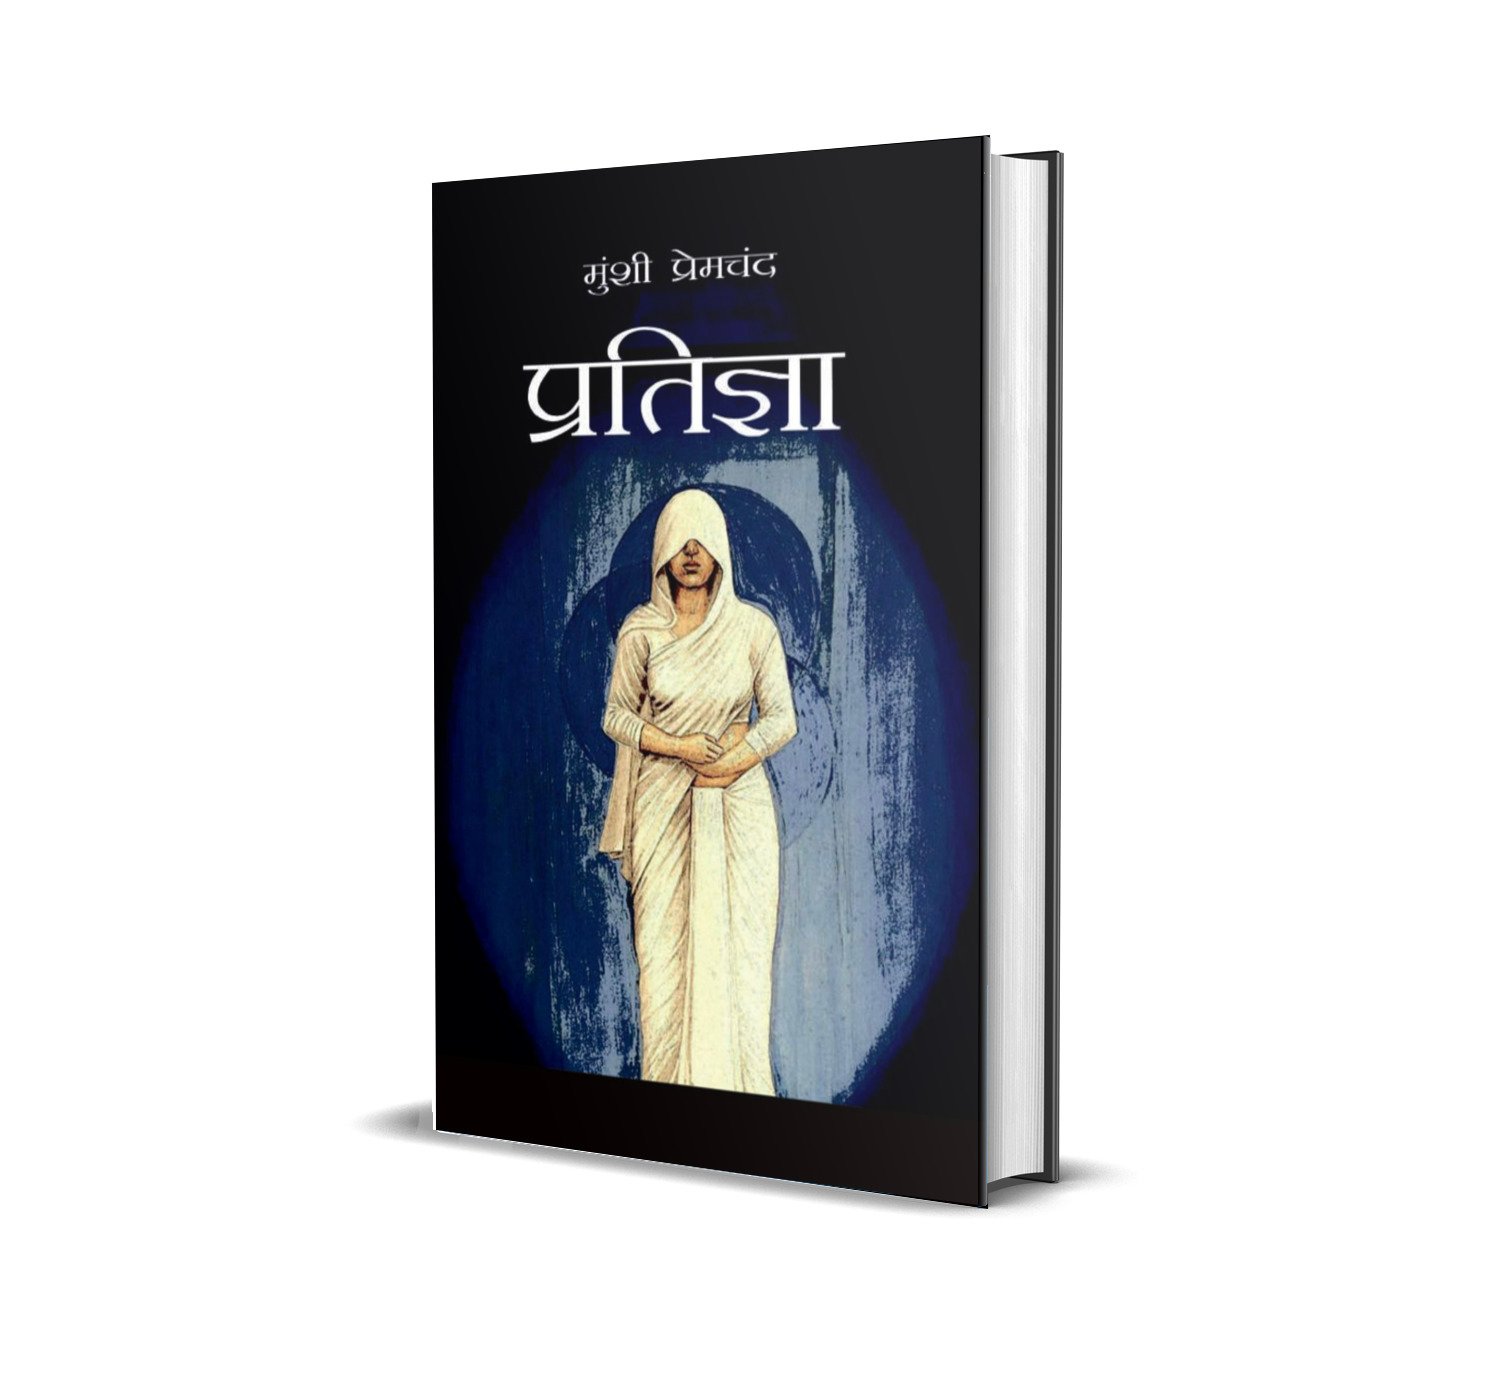 [Hindi] Pratigya by Munshi Premchand